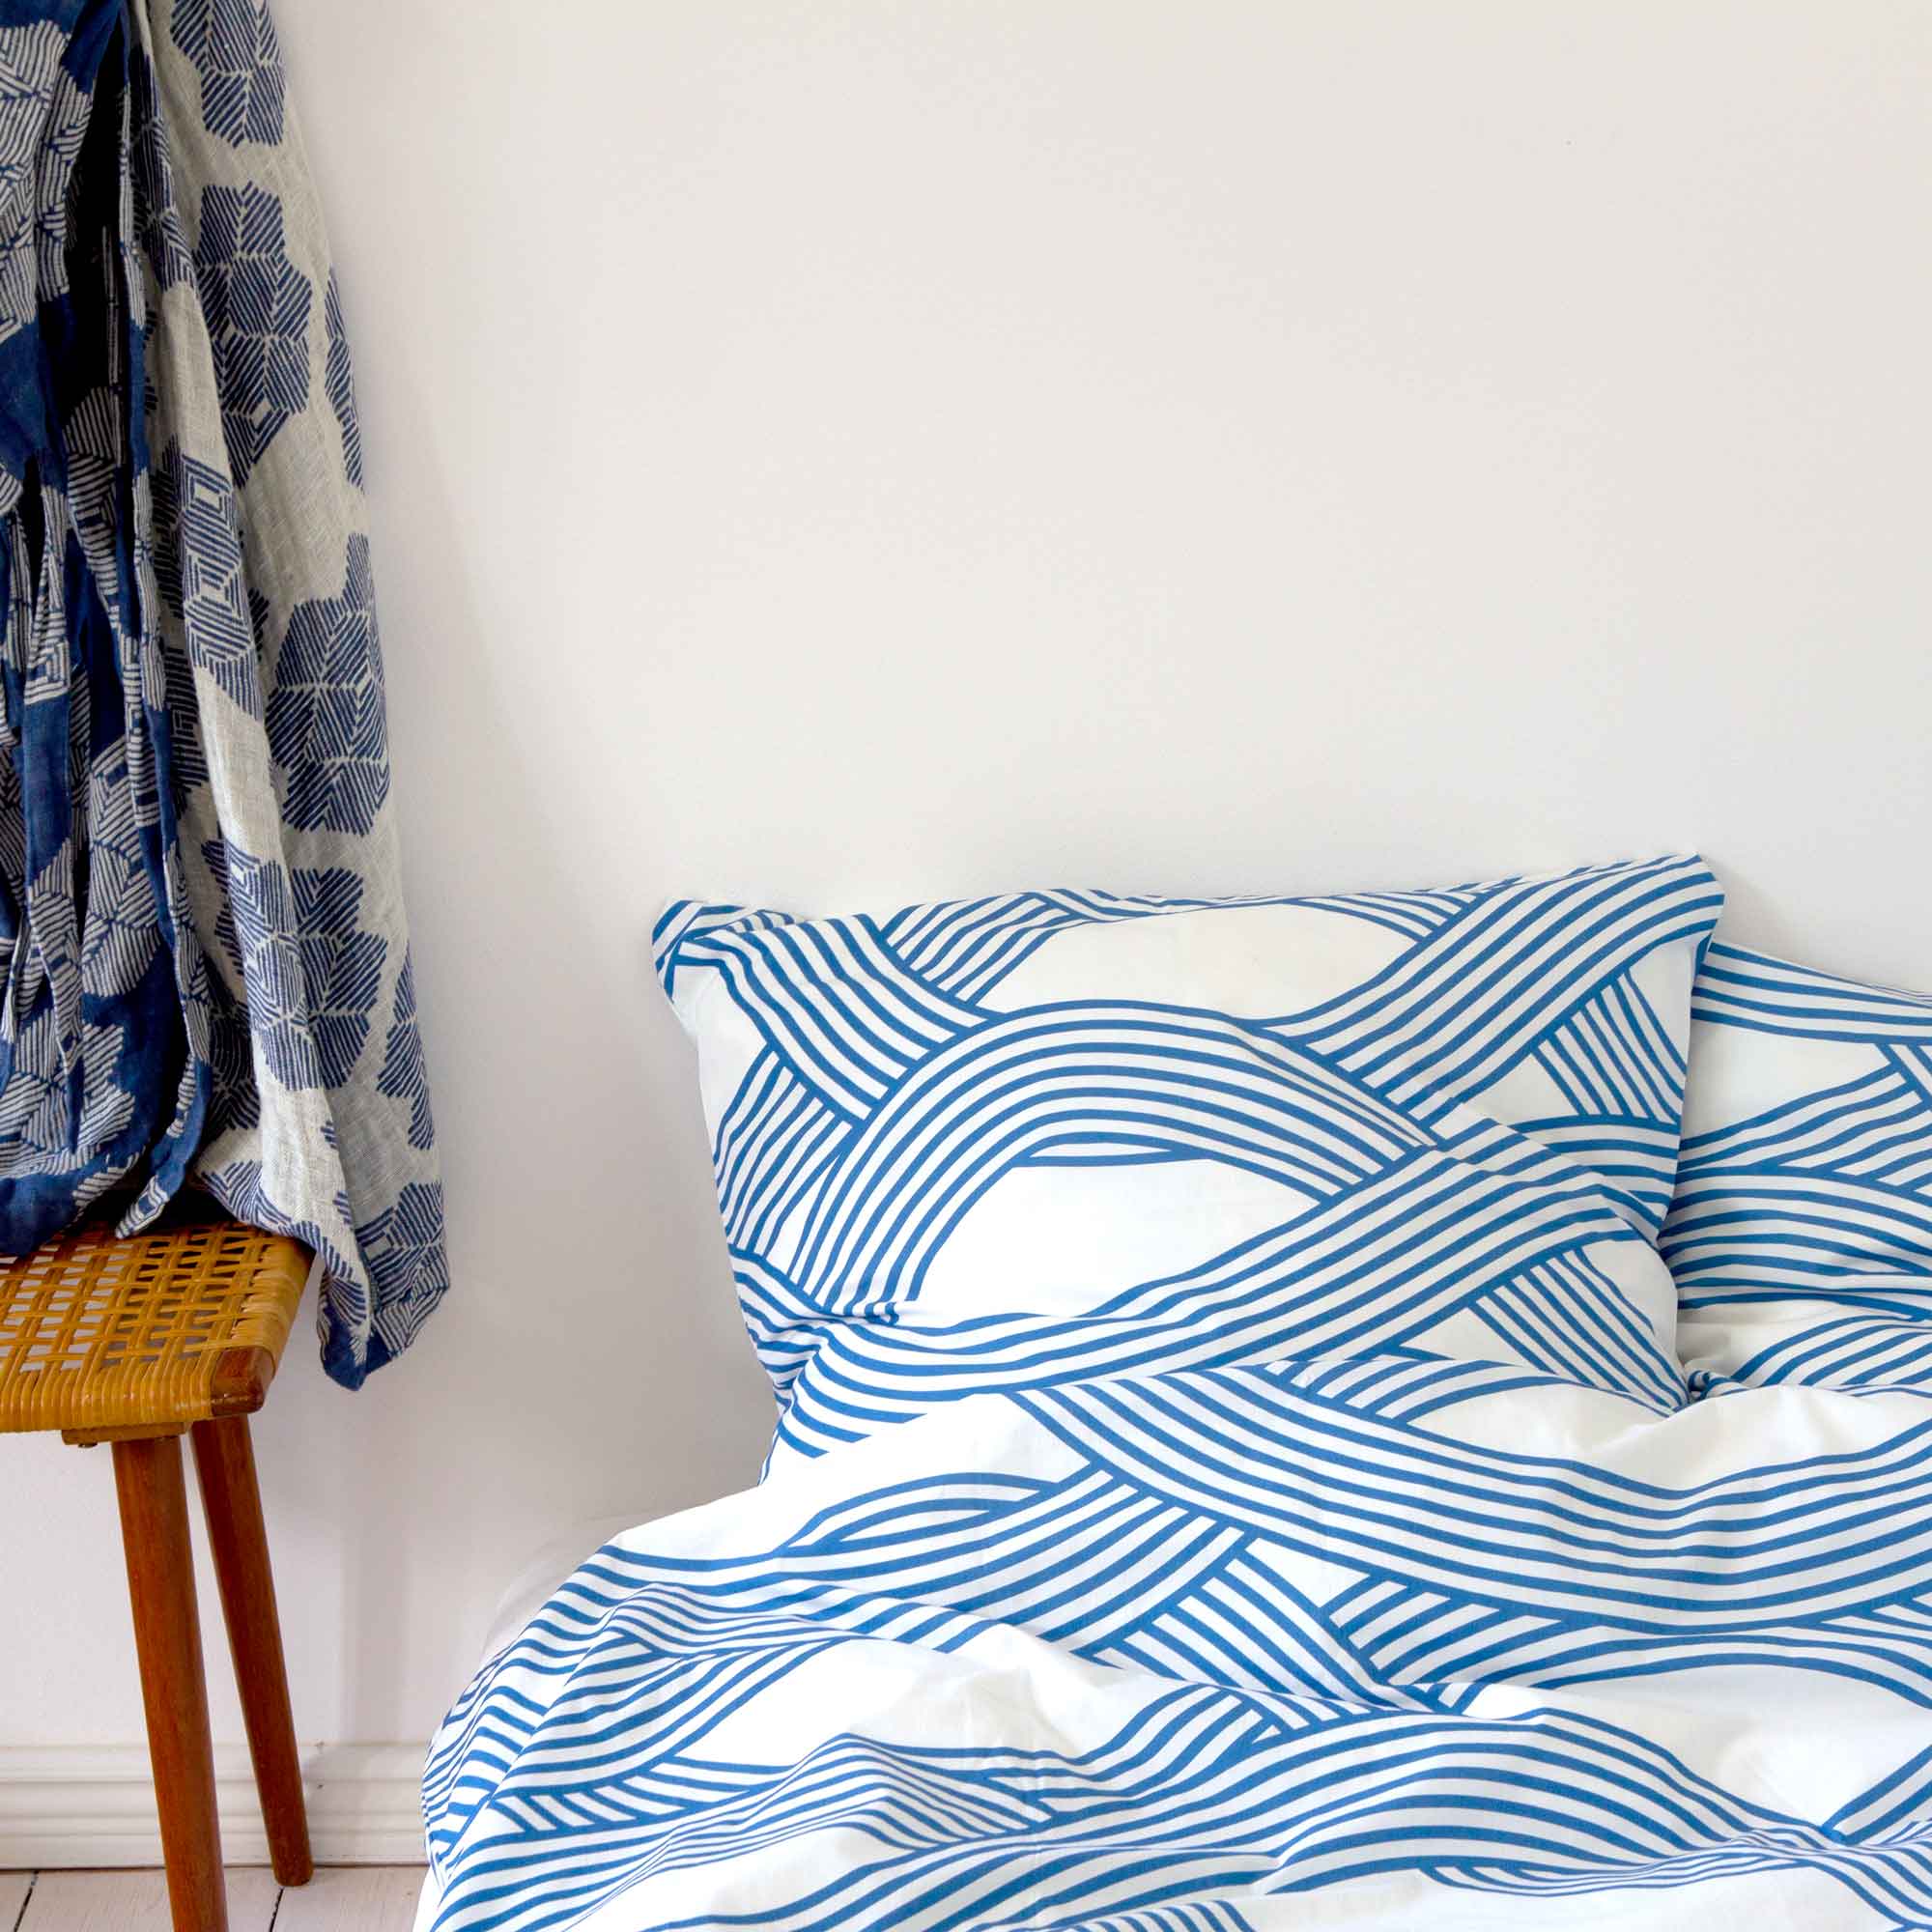 Havblåt sengetøj af økologisk bomuld, design af Anne Rosenberg, RosenbergCph